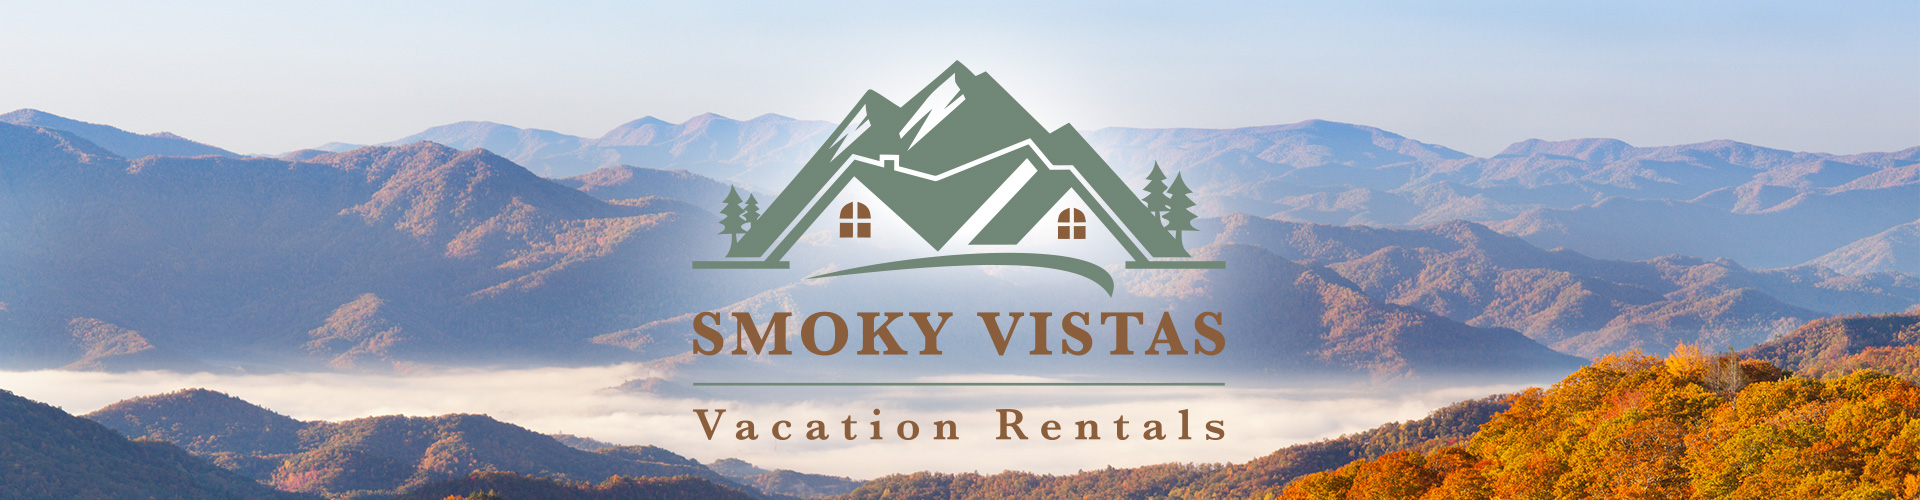 Smoky Vistas Vacation Rentals Banner